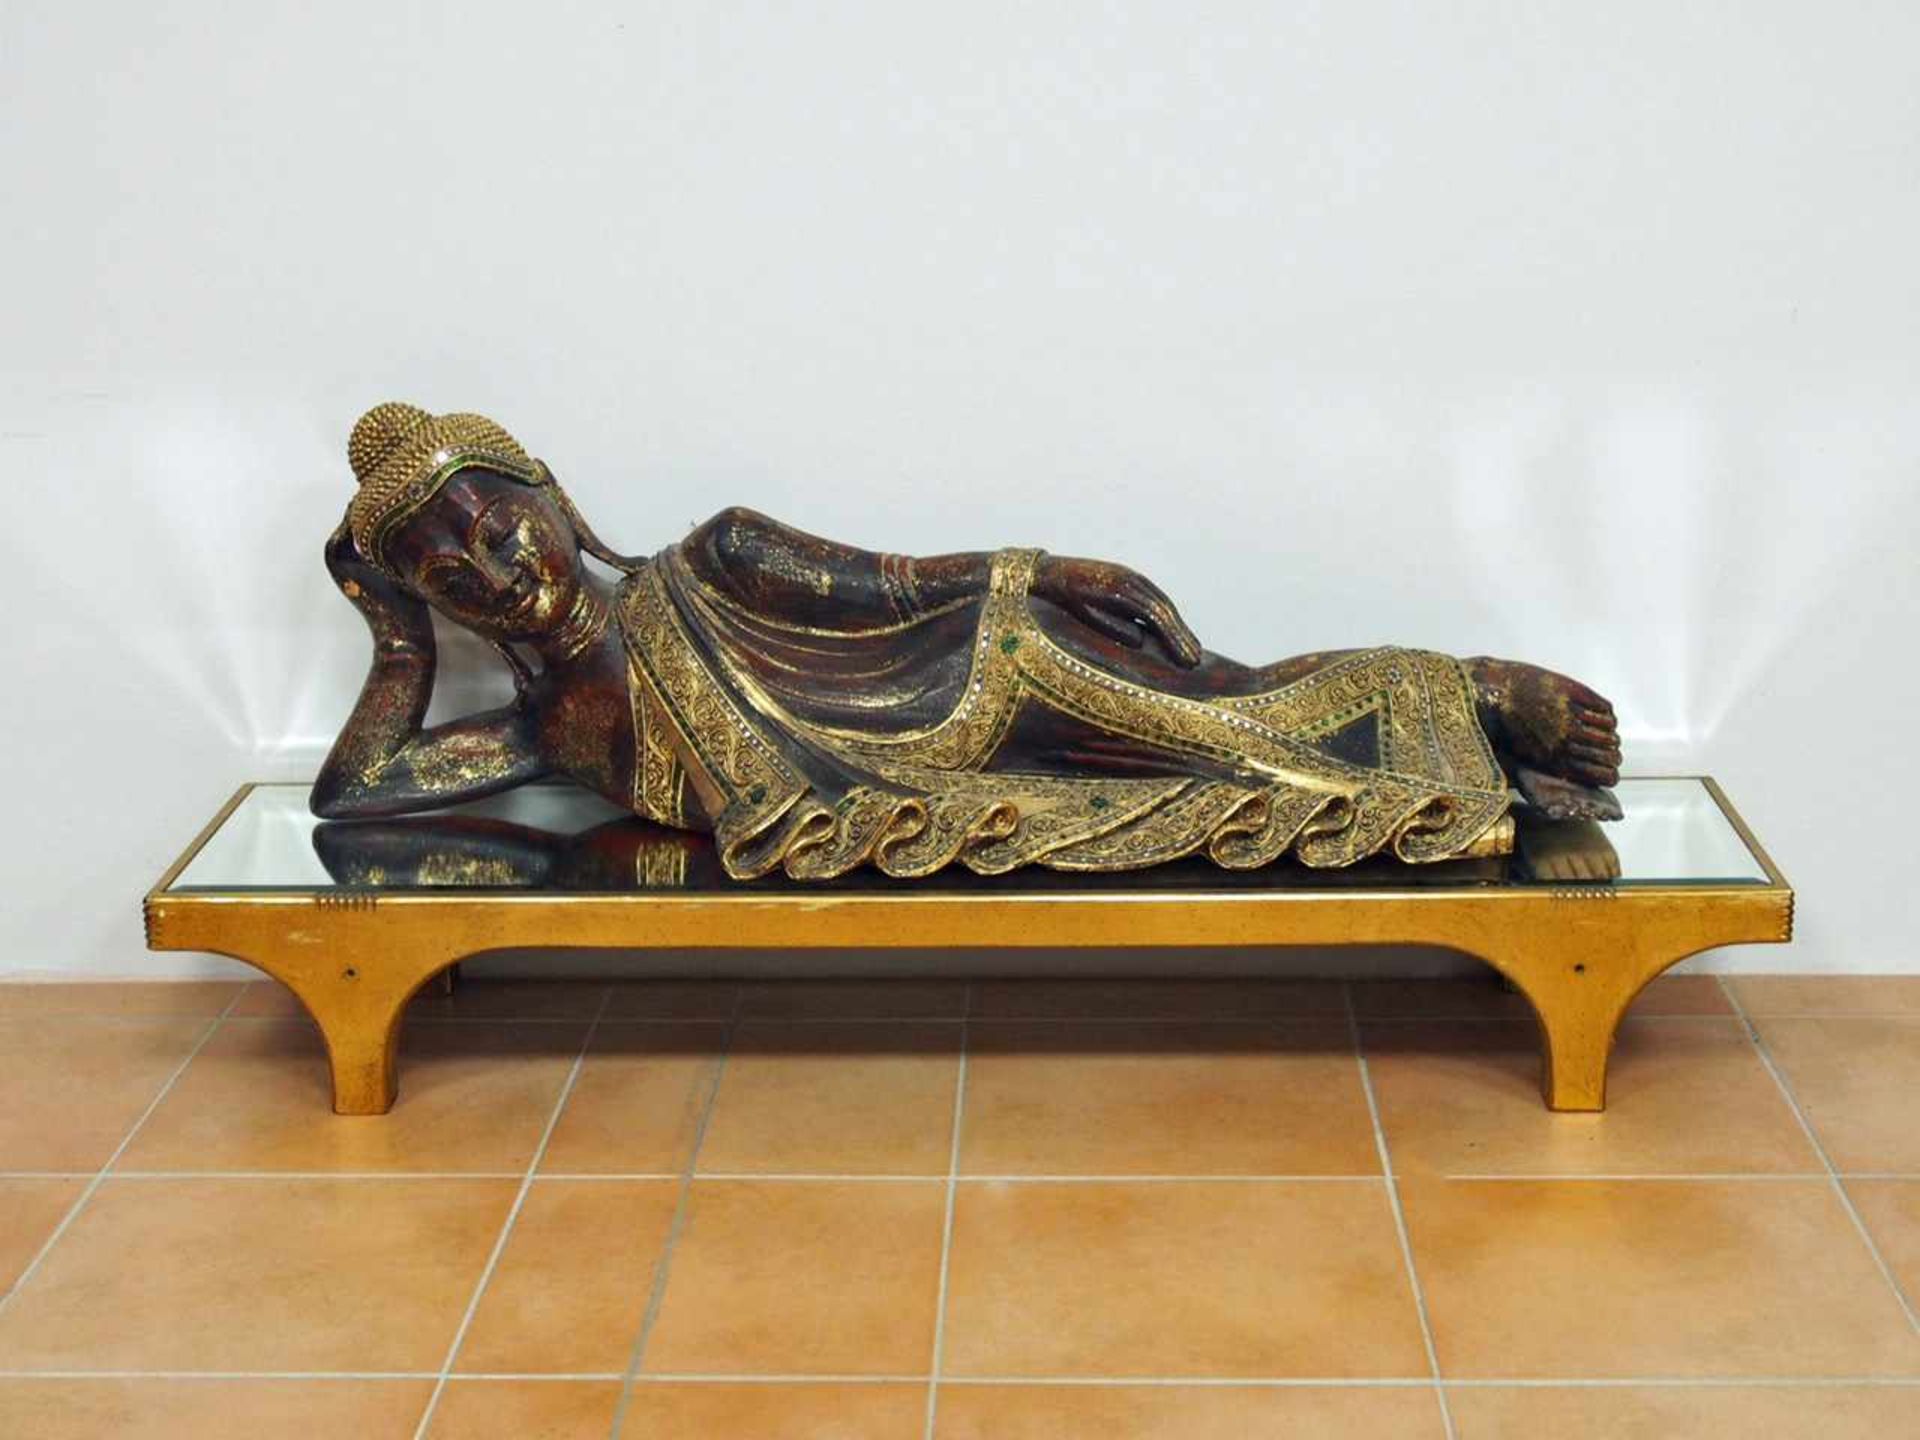 Liegender BuddhaHolz, geschnitzt, vergoldet, Steinbesatz, Thailand 20. Jahrhundert, 34 x 101 x 24 cm